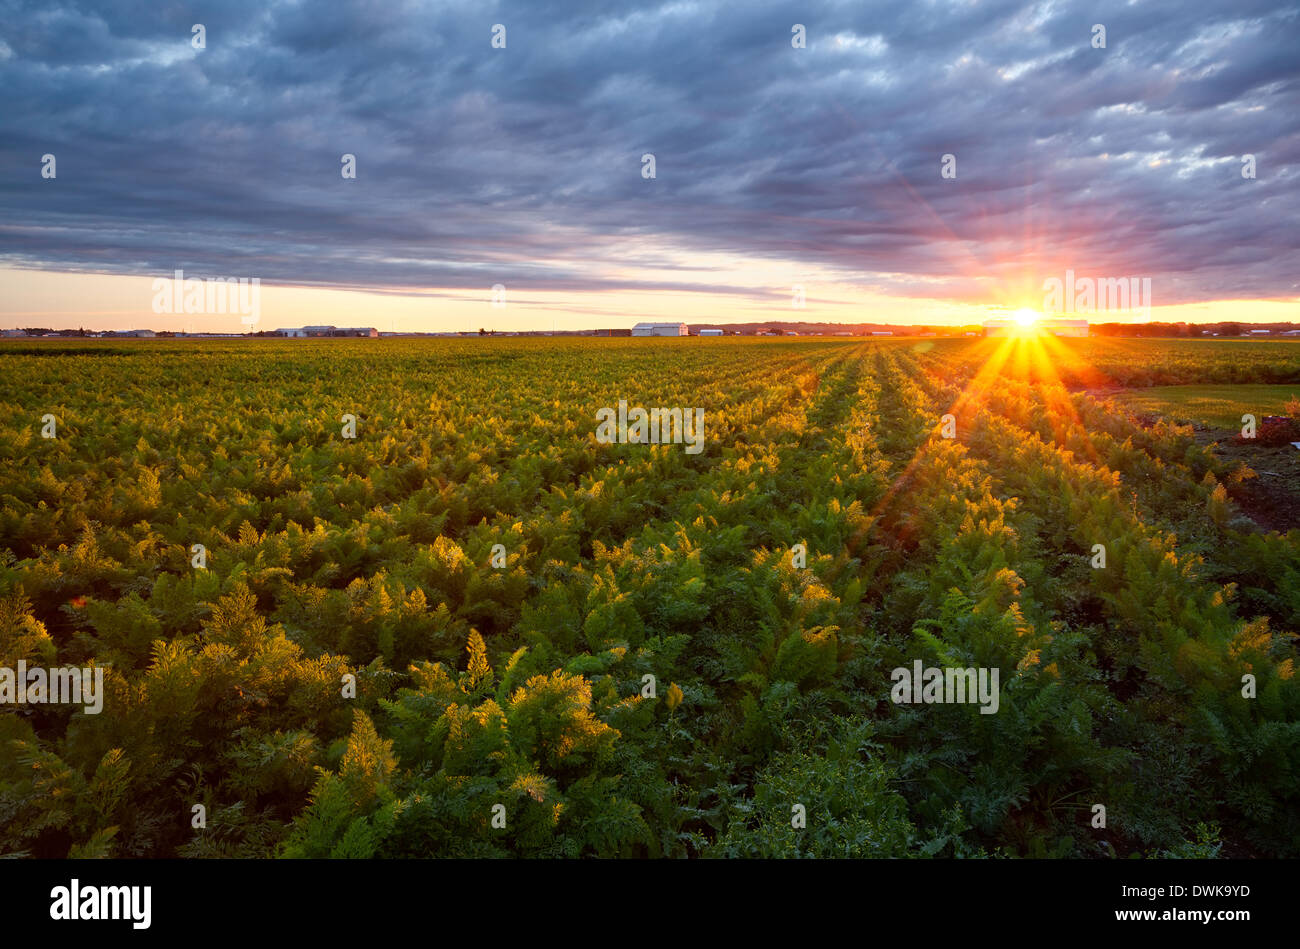 Un domaine de carottes dans le marais Holland au lever du soleil. Bradford West Gwillimbury, Ontario, Canada. Banque D'Images